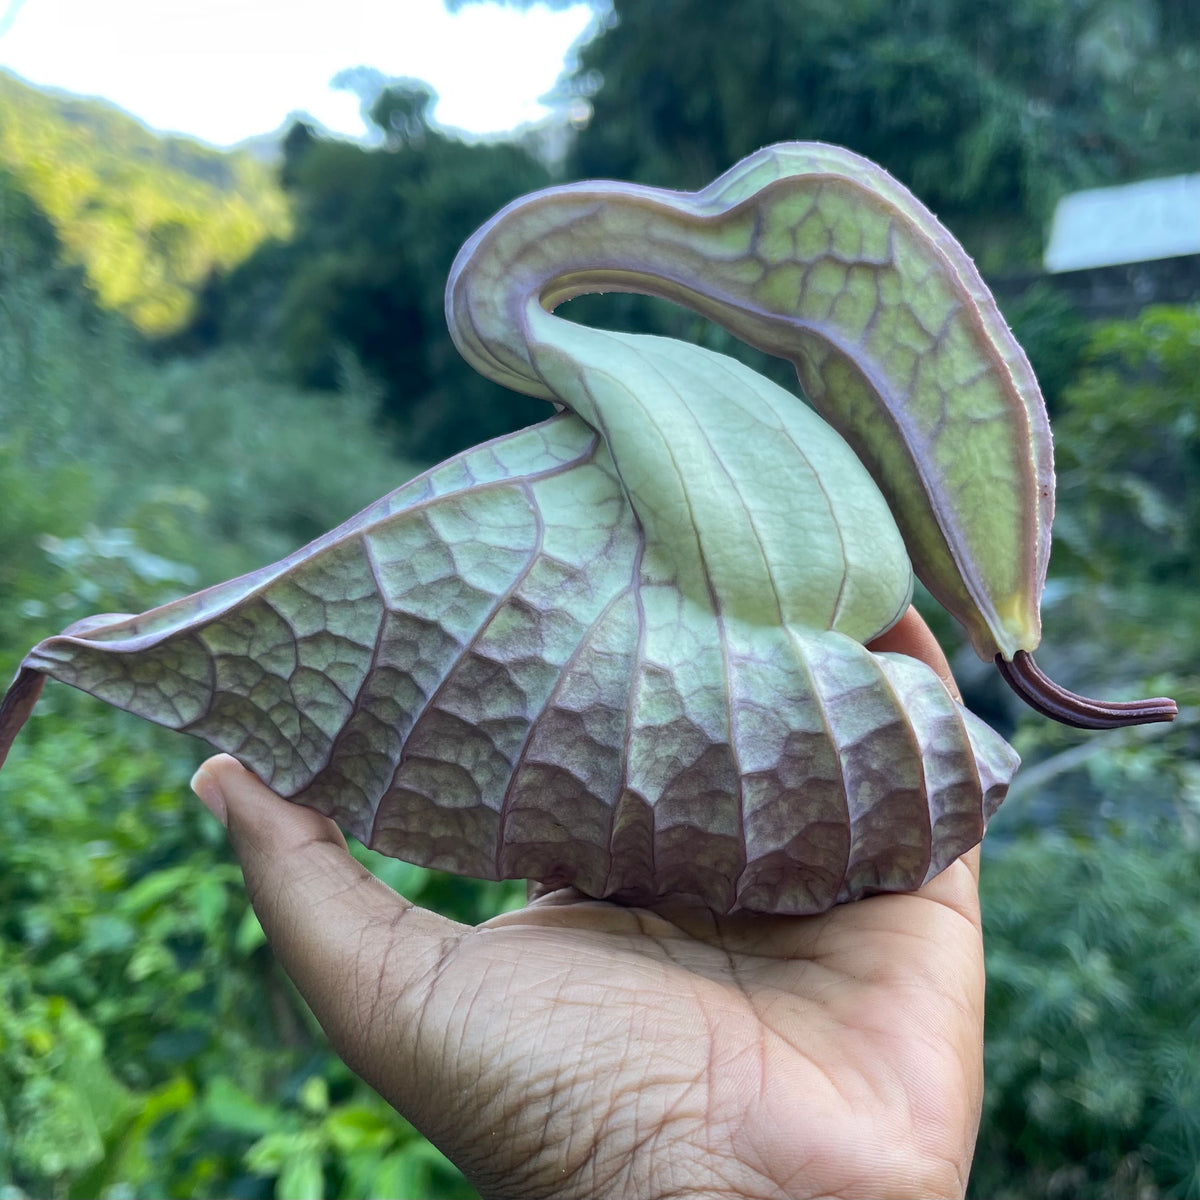 Jamaican Duck Flower Detox - Flor de Pato, 1 pcs, Palo Guaco, Alkaline  Herbal Cleanse